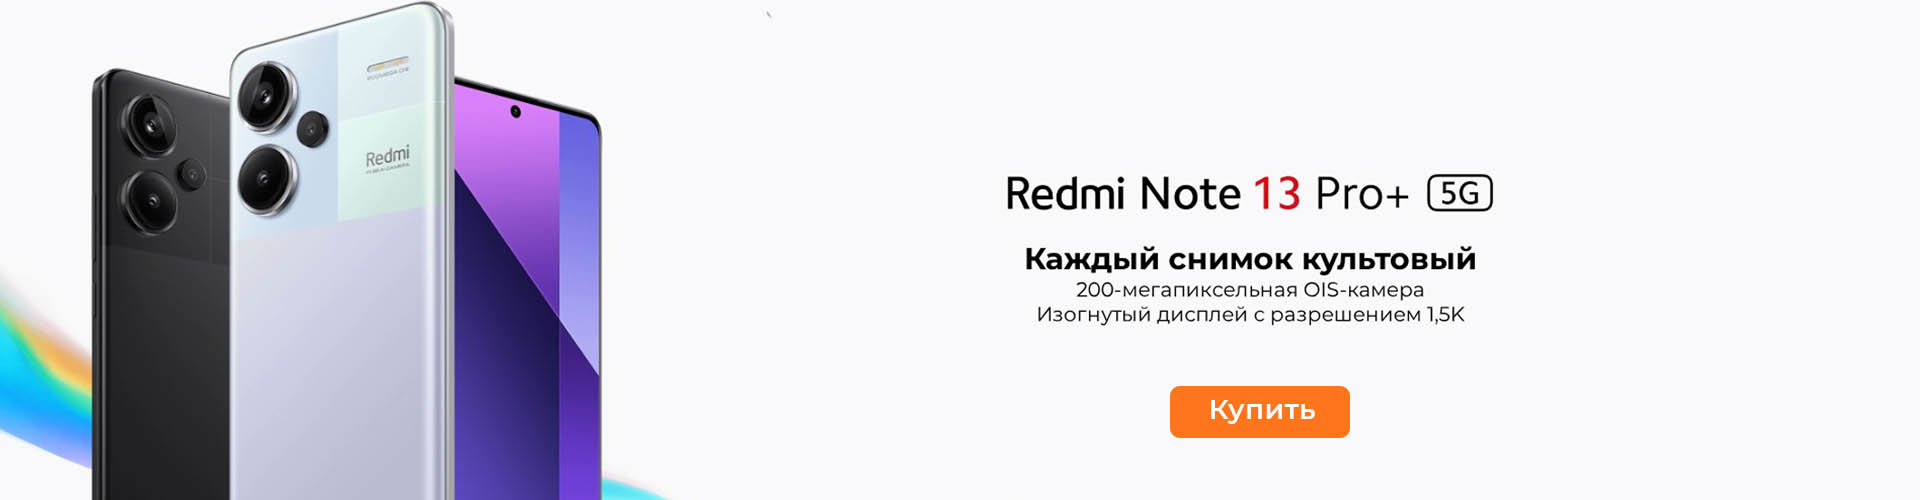 Redmi note 13 Pro+